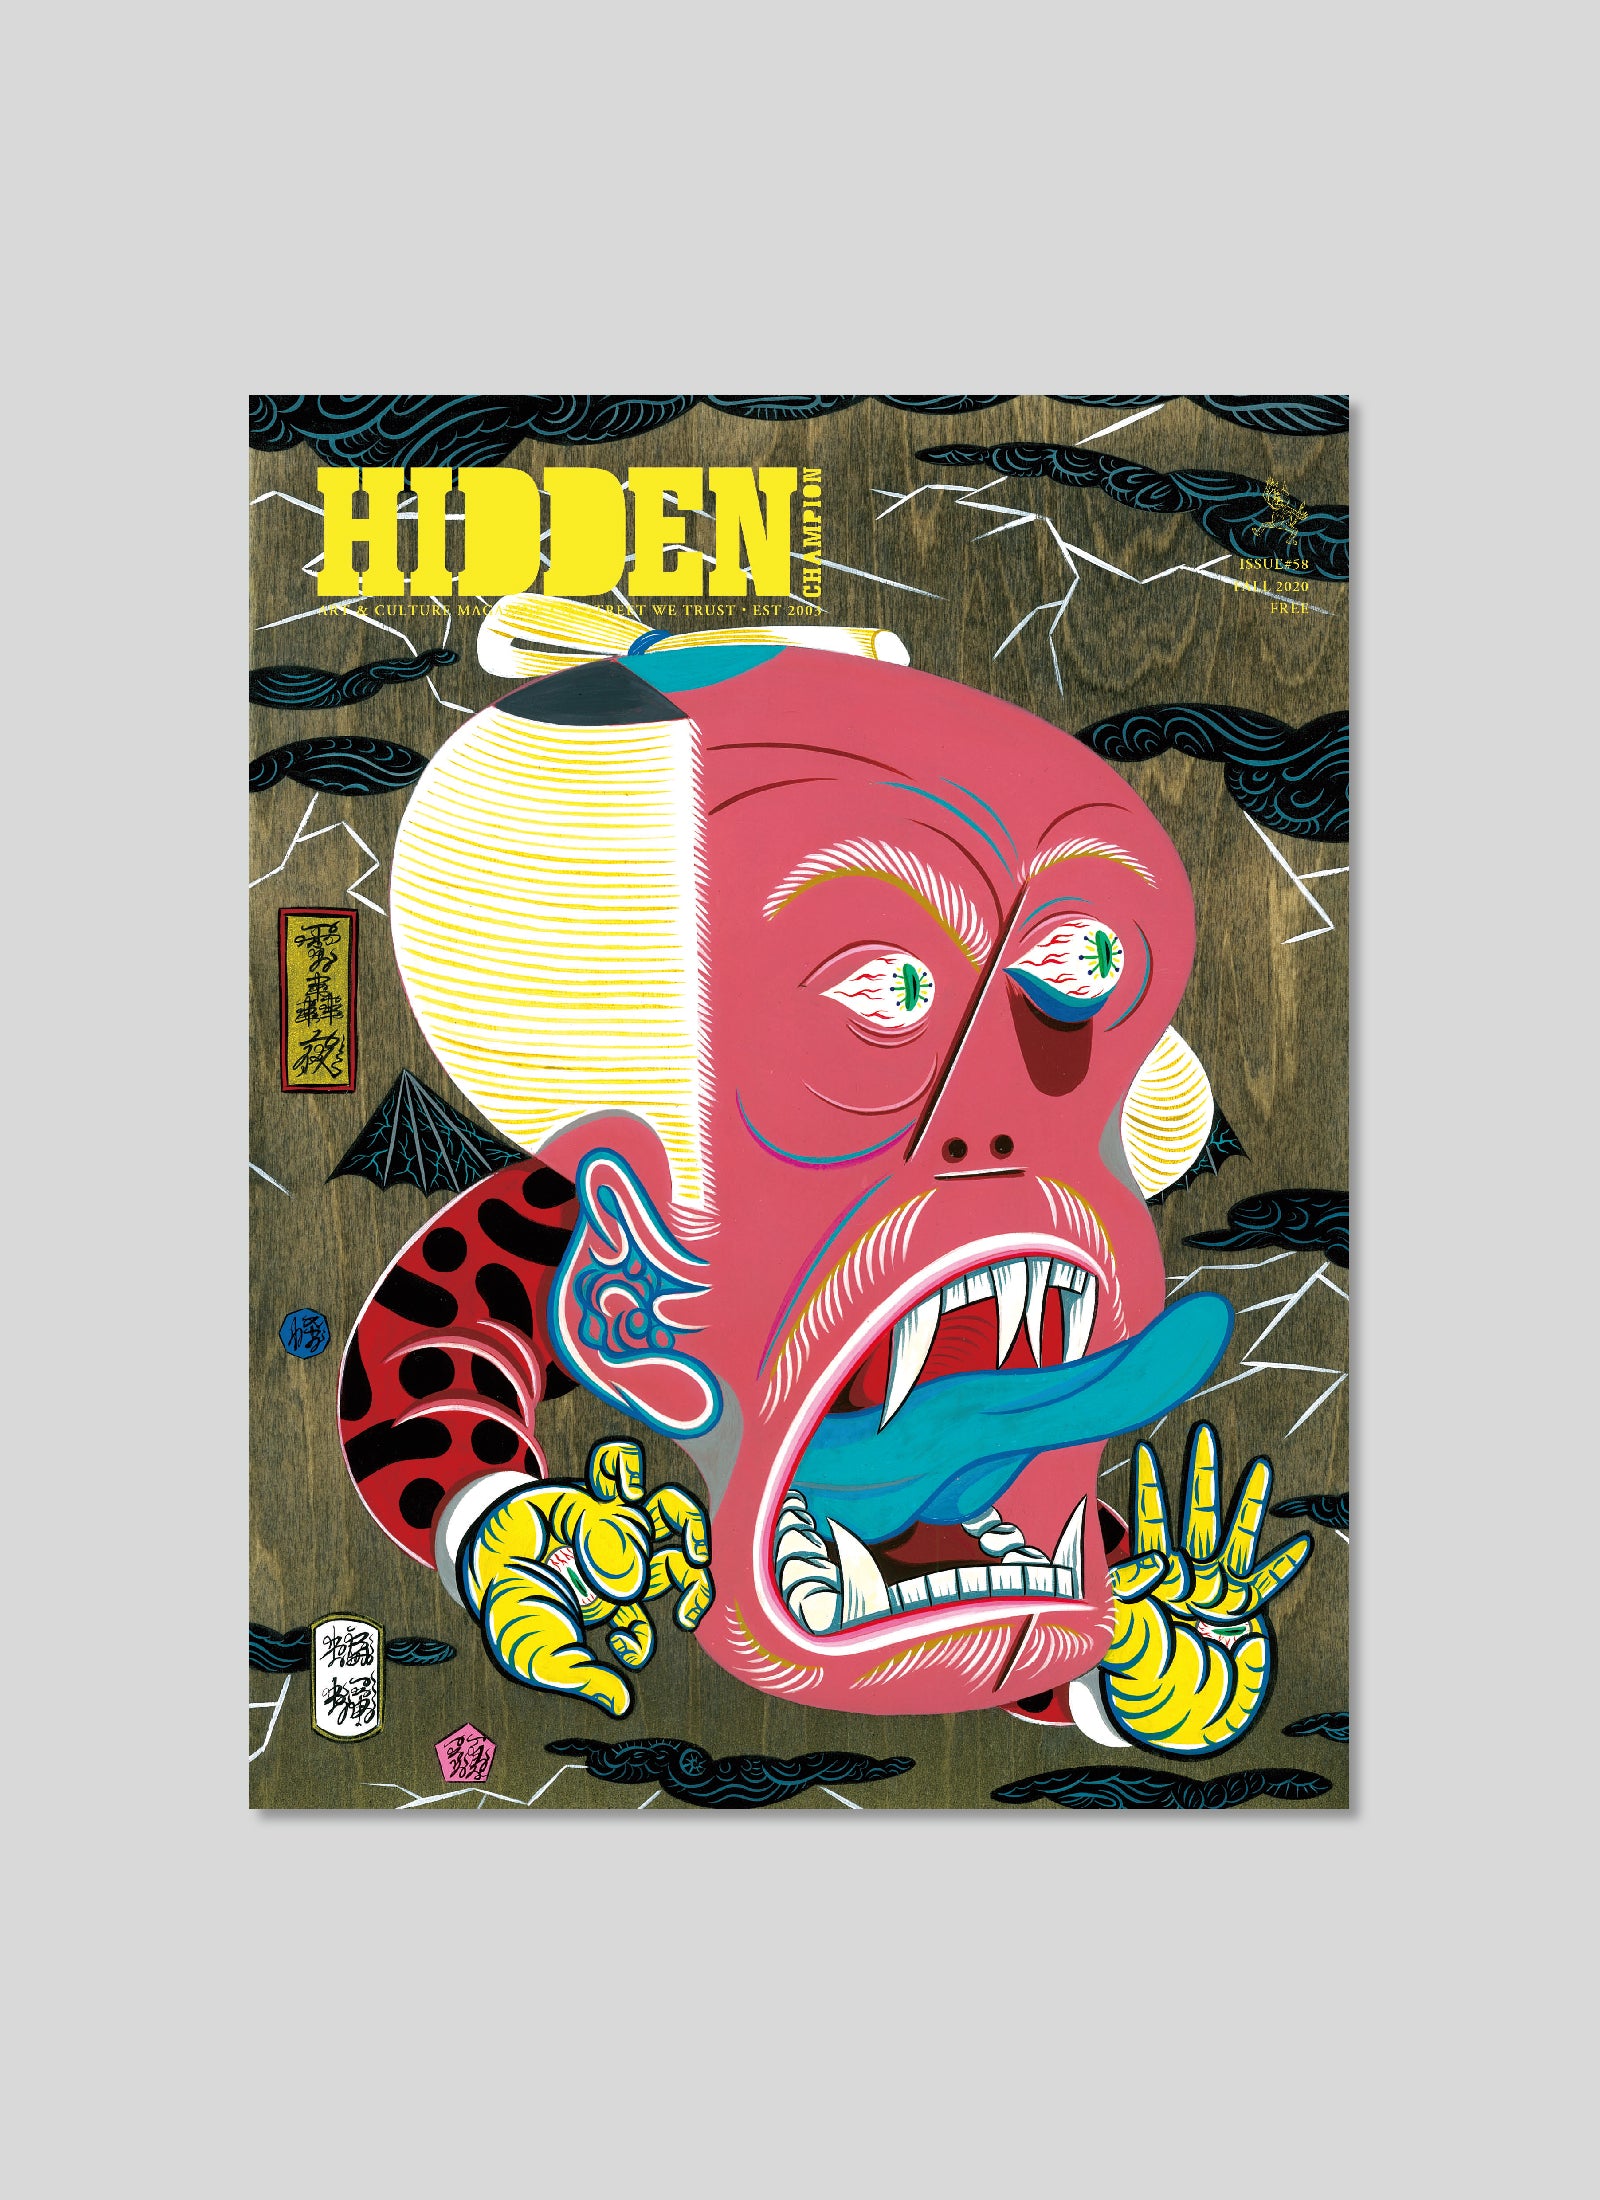 HIDDEN CHAMPION Issue #57